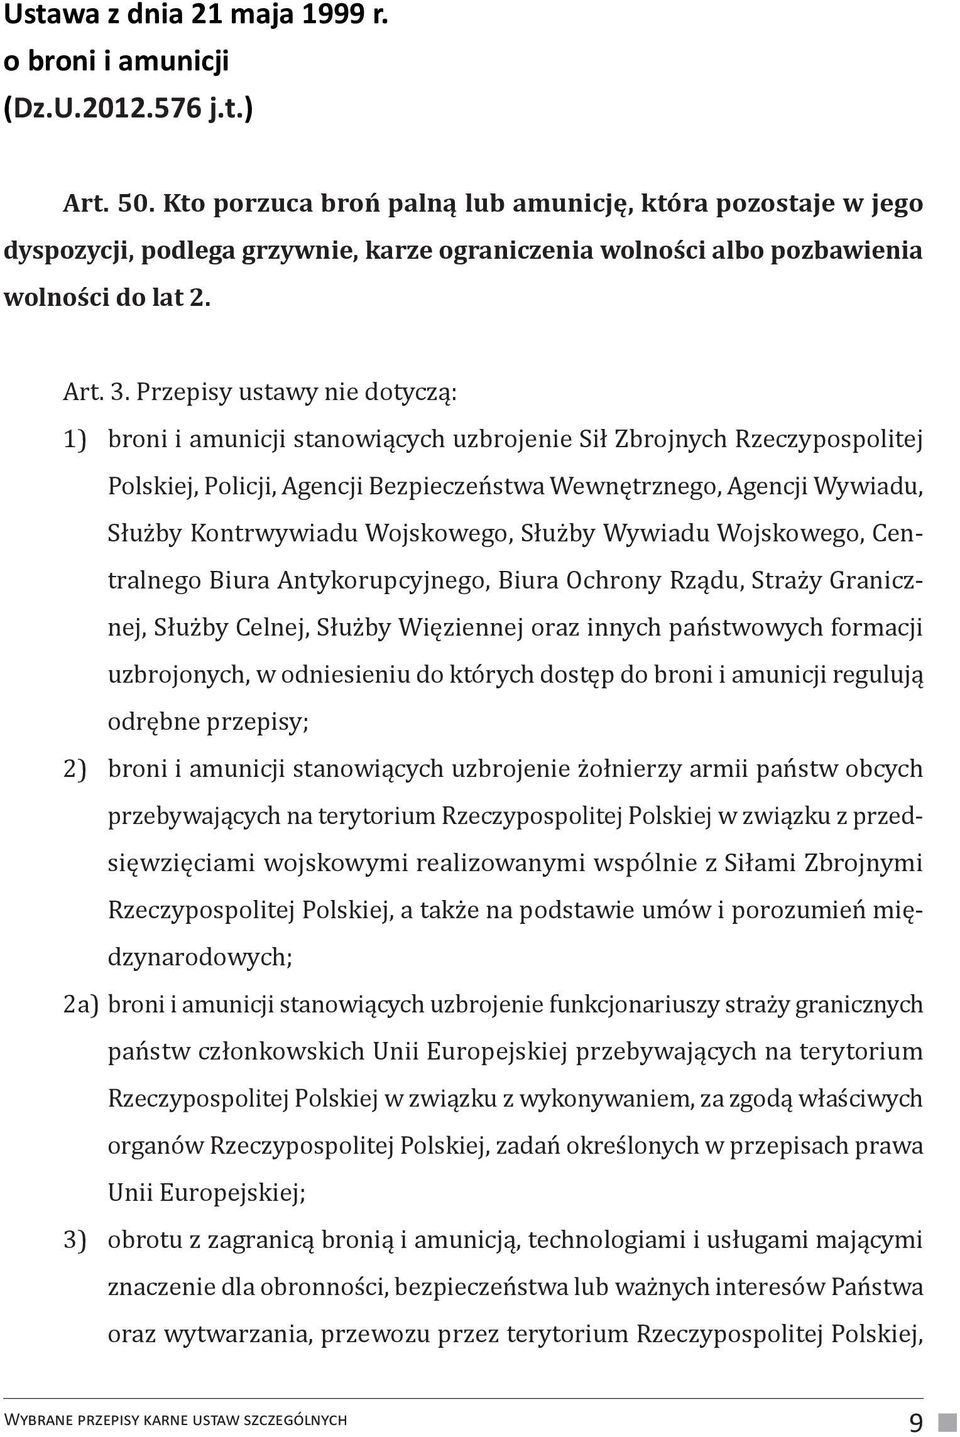 Przepisy ustawy nie dotyczą: 1) broni i amunicji stanowiących uzbrojenie Sił Zbrojnych Rzeczypospolitej Polskiej, Policji, Agencji Bezpieczeństwa Wewnętrznego, Agencji Wywiadu, Służby Kontrwywiadu